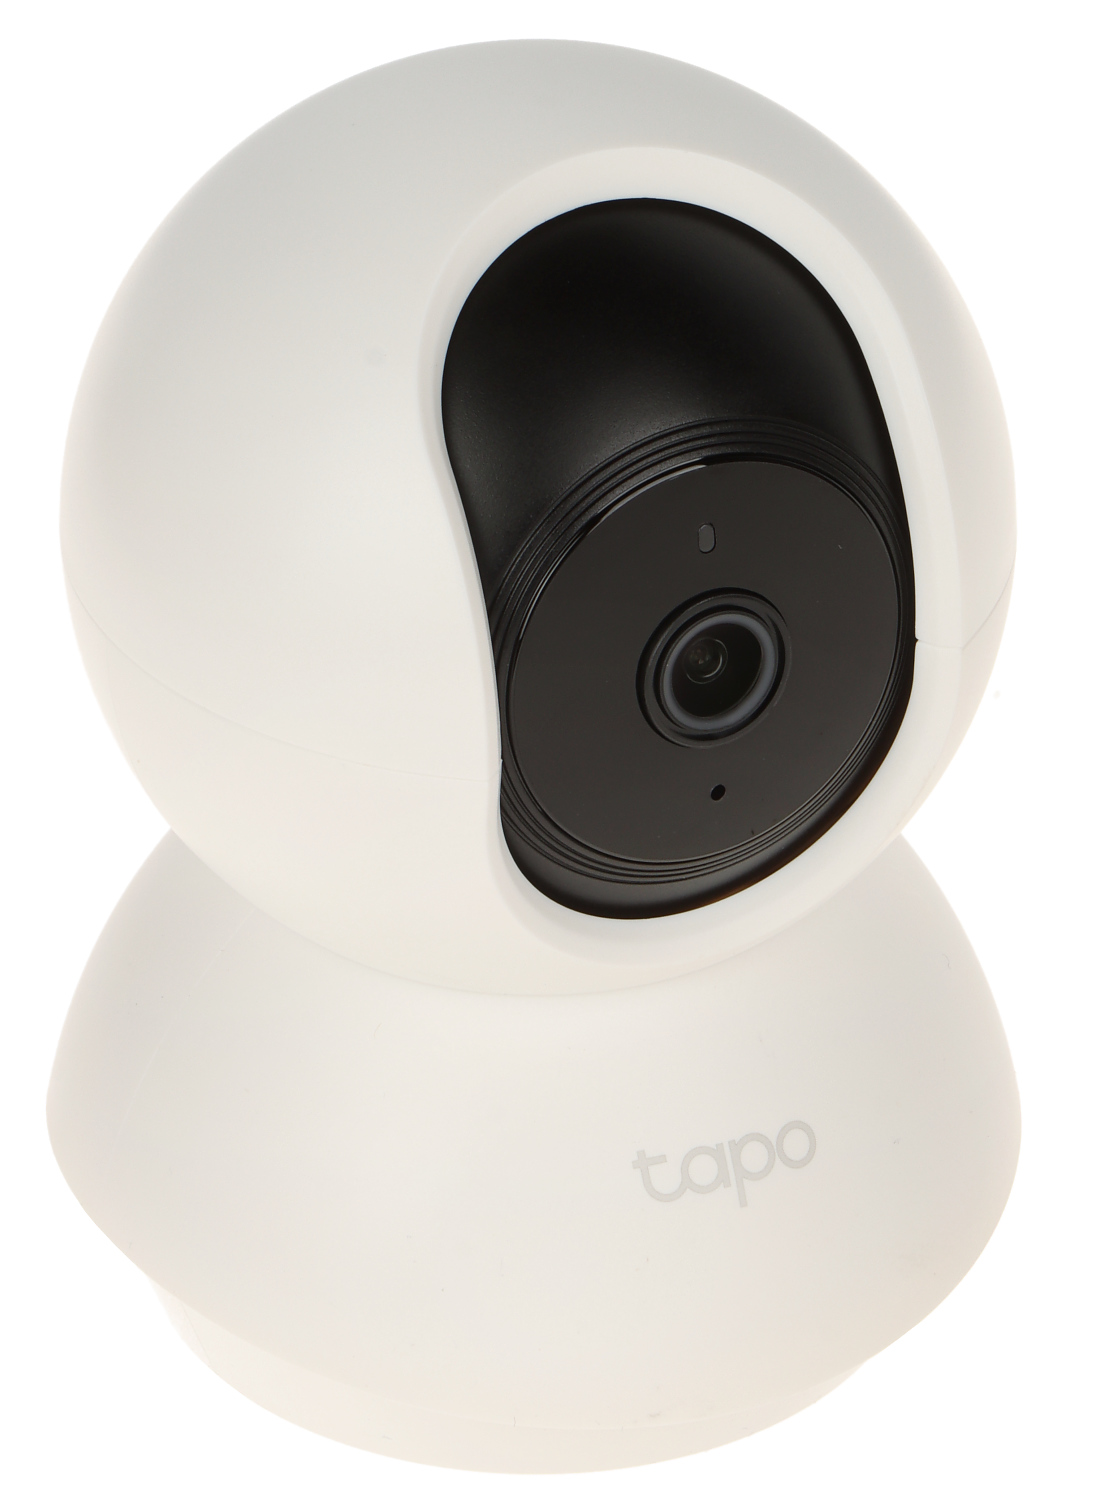 TP-link Tapo C200 Trådlös övervakningskamera